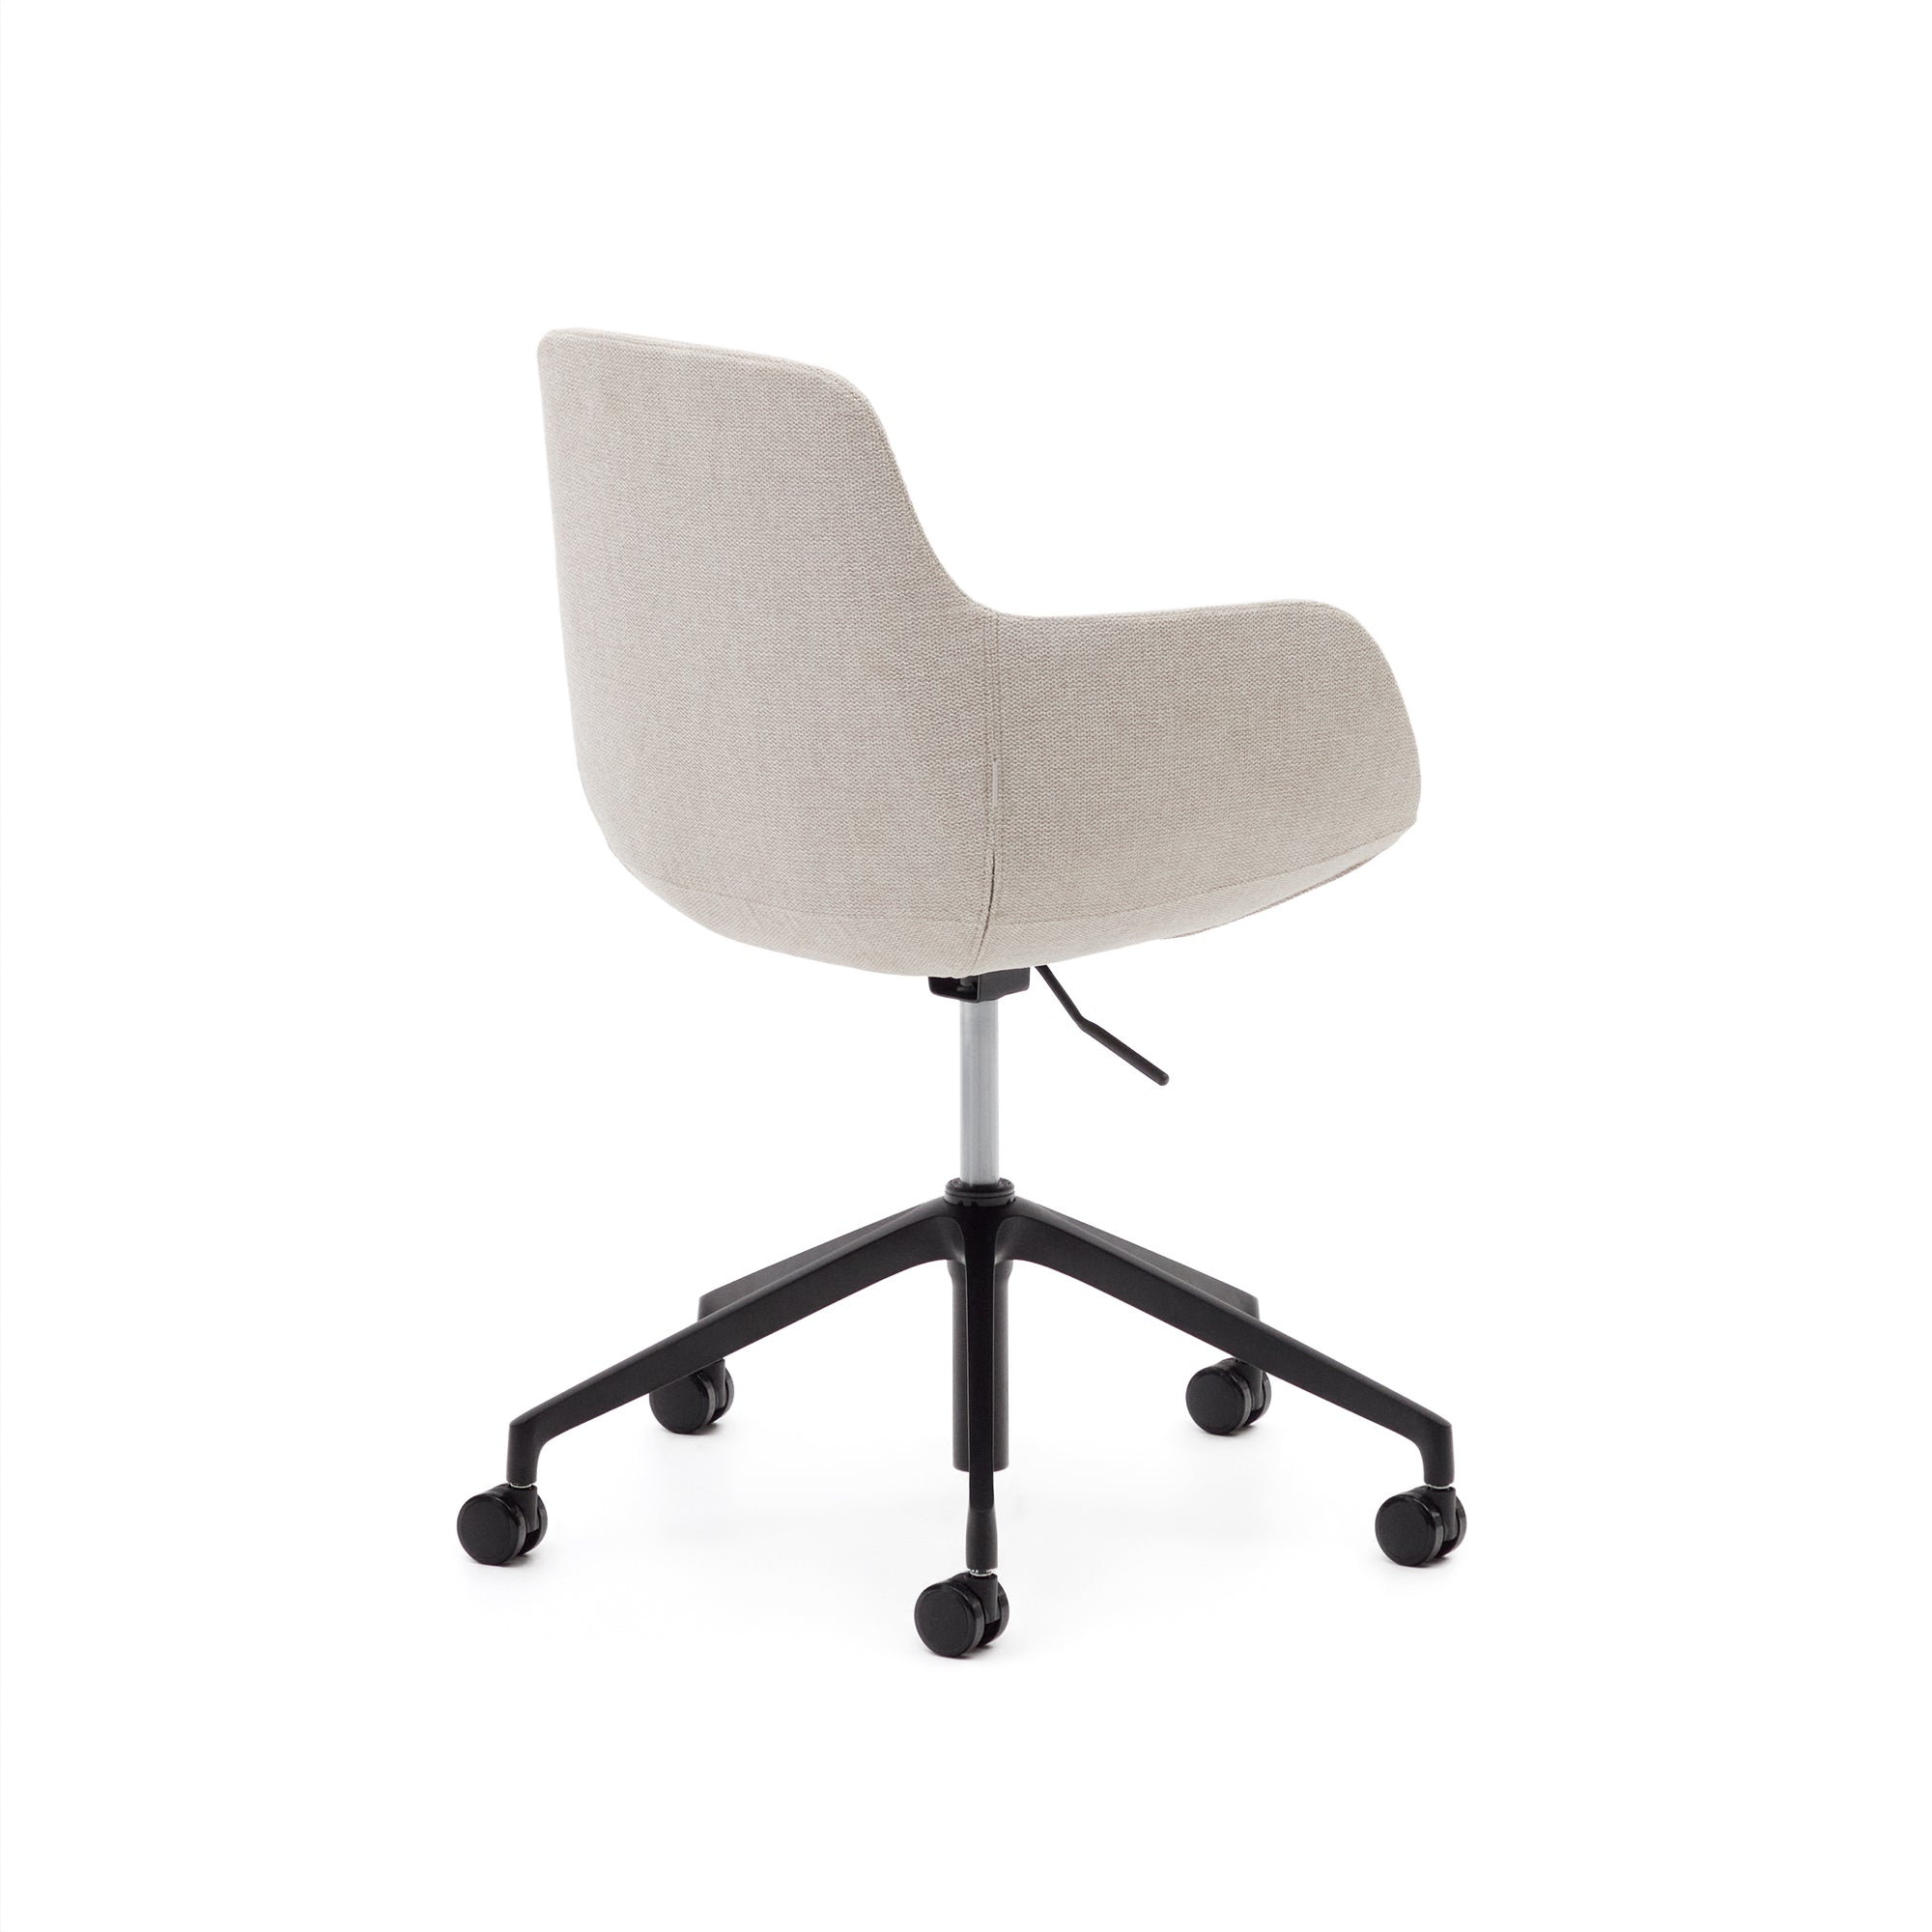 Tissiana bézs színű, alumíniumból készült, matt fekete színű irodai szék